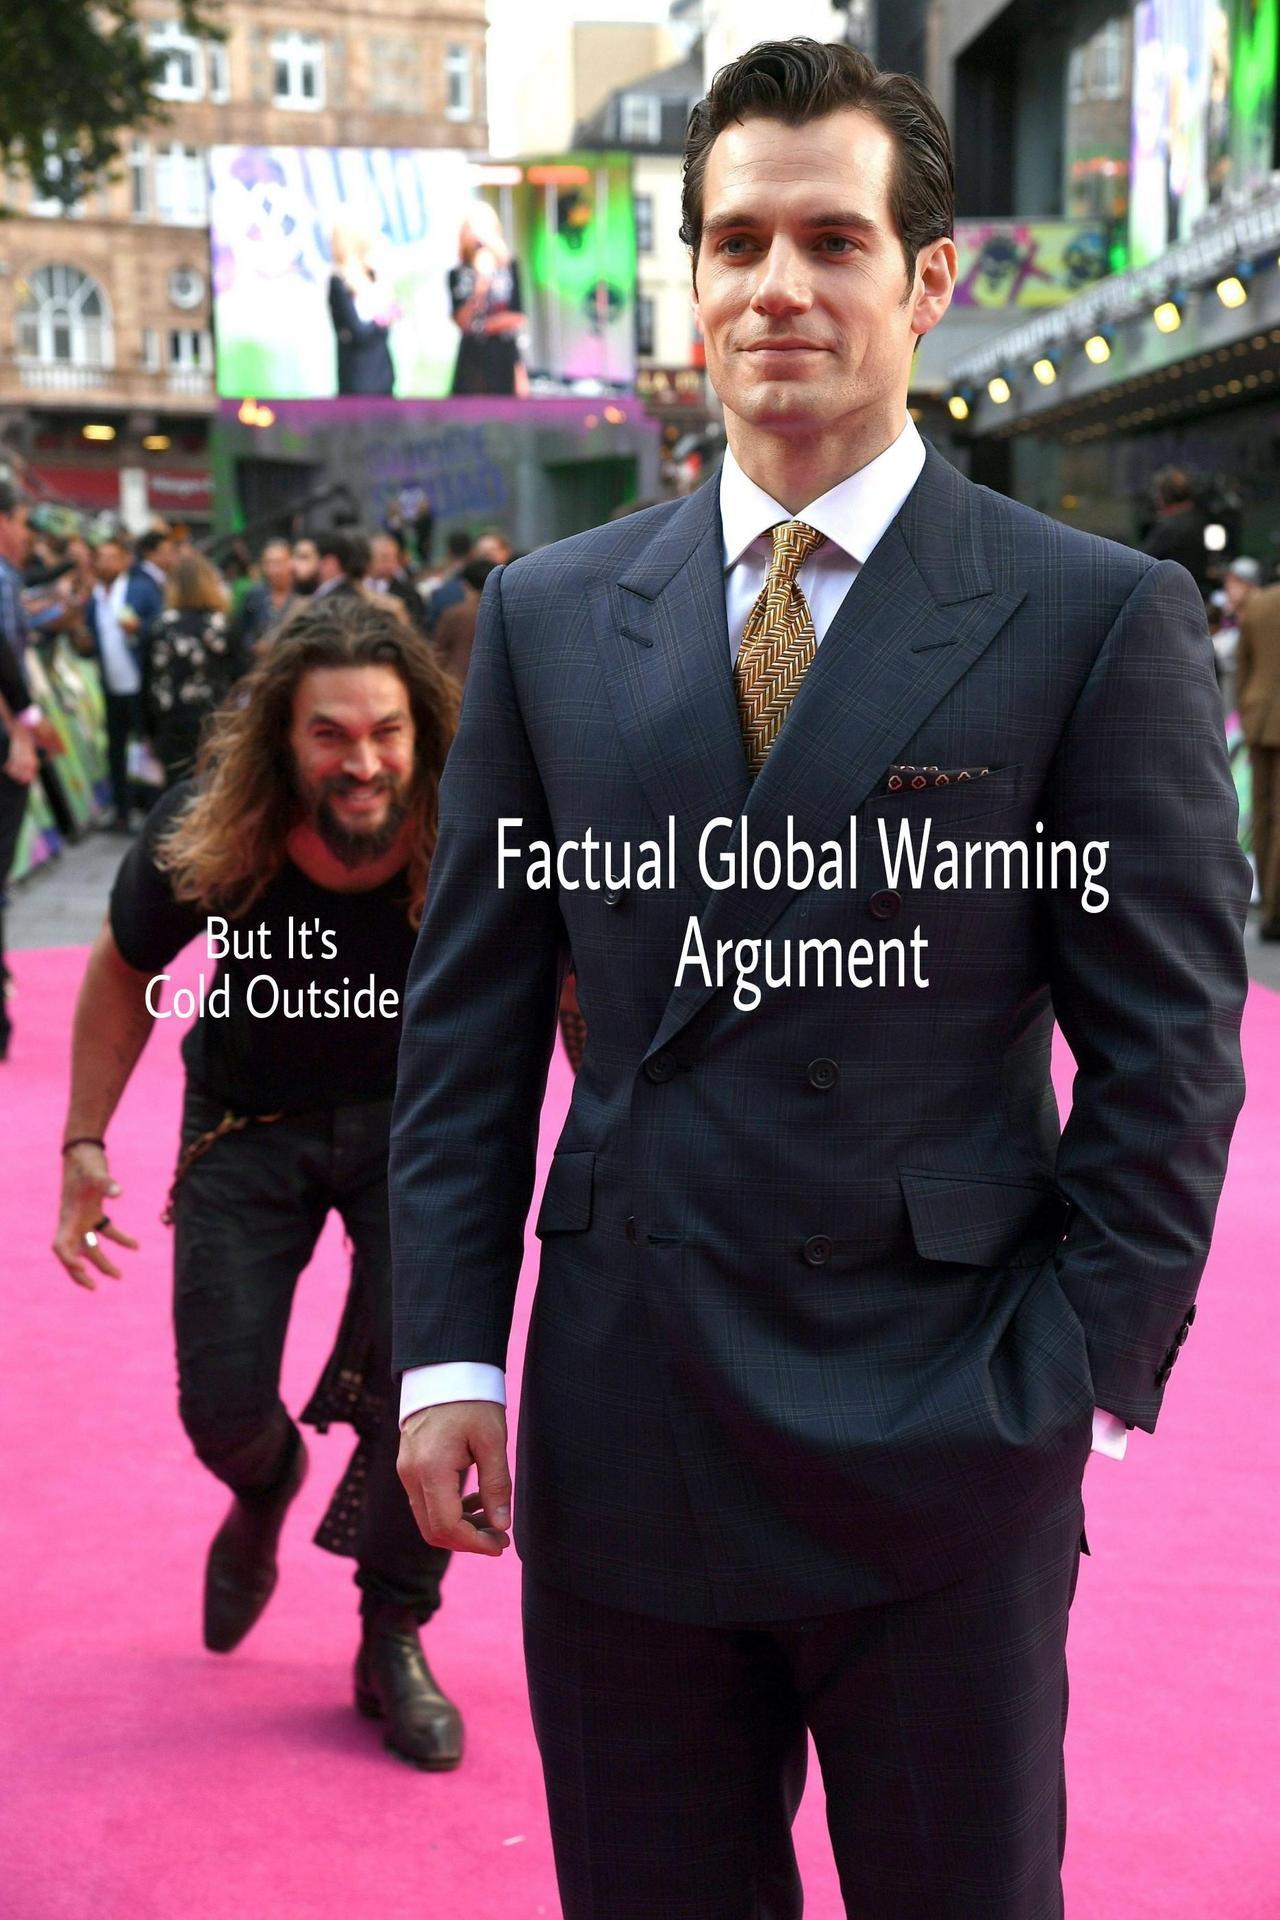 It's cold outside - meme